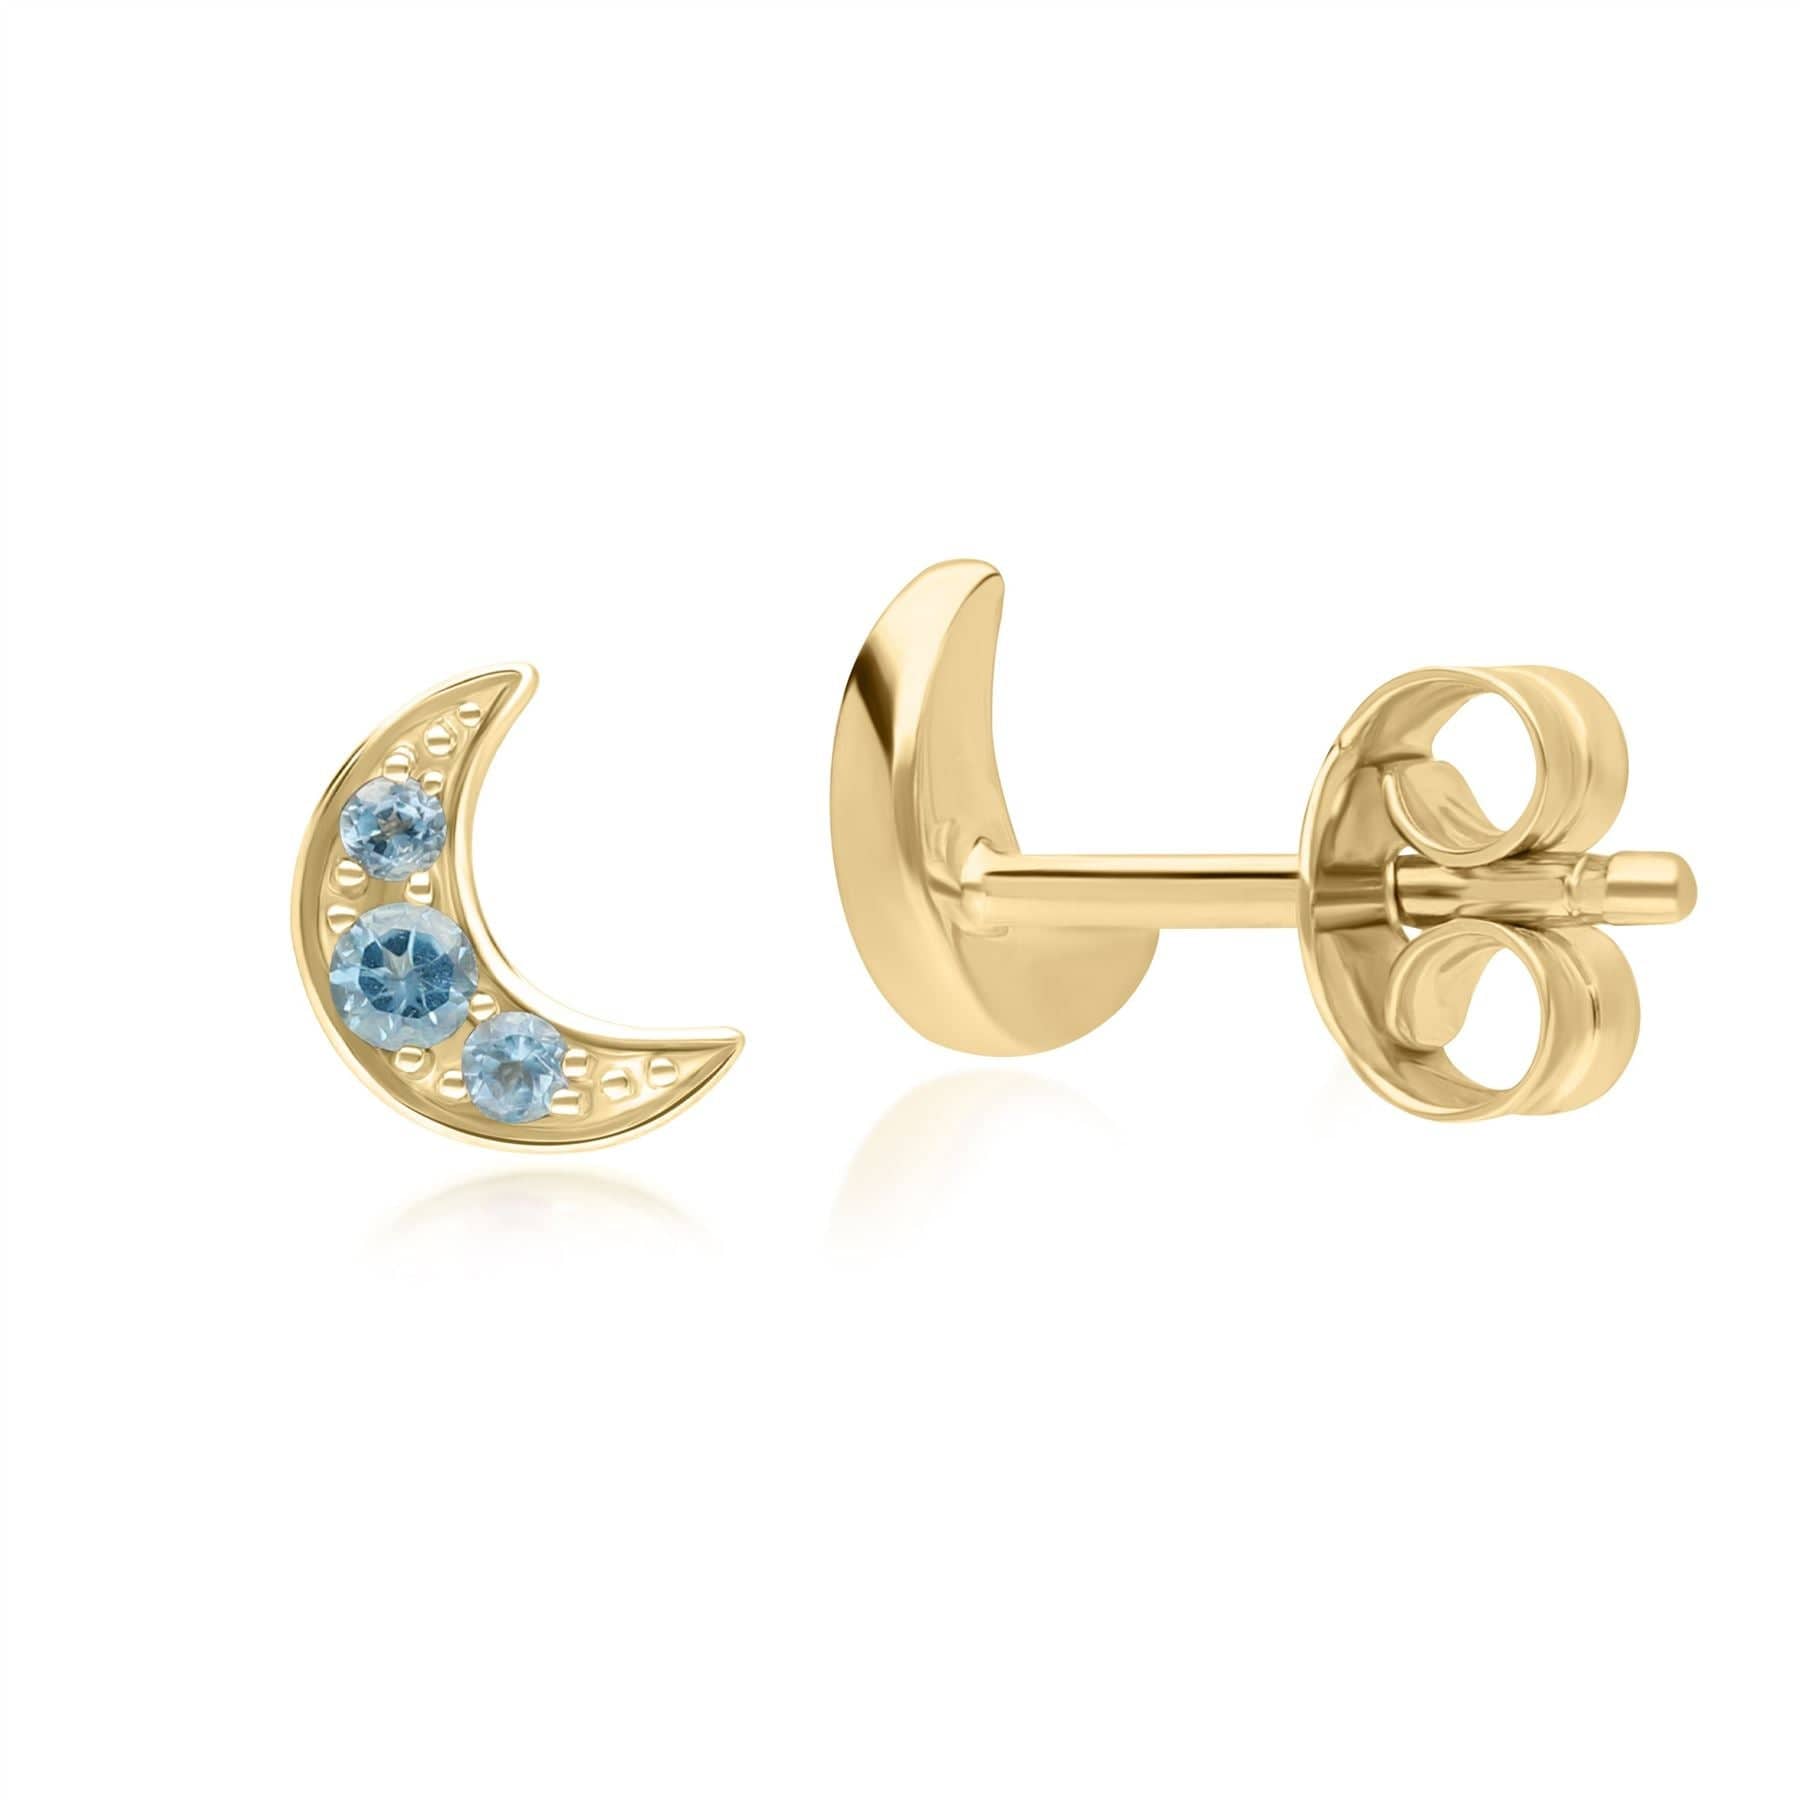 Night Sky London Blue Topaz Moon Stud Earrings in 9ct Yellow Gold - Gemondo